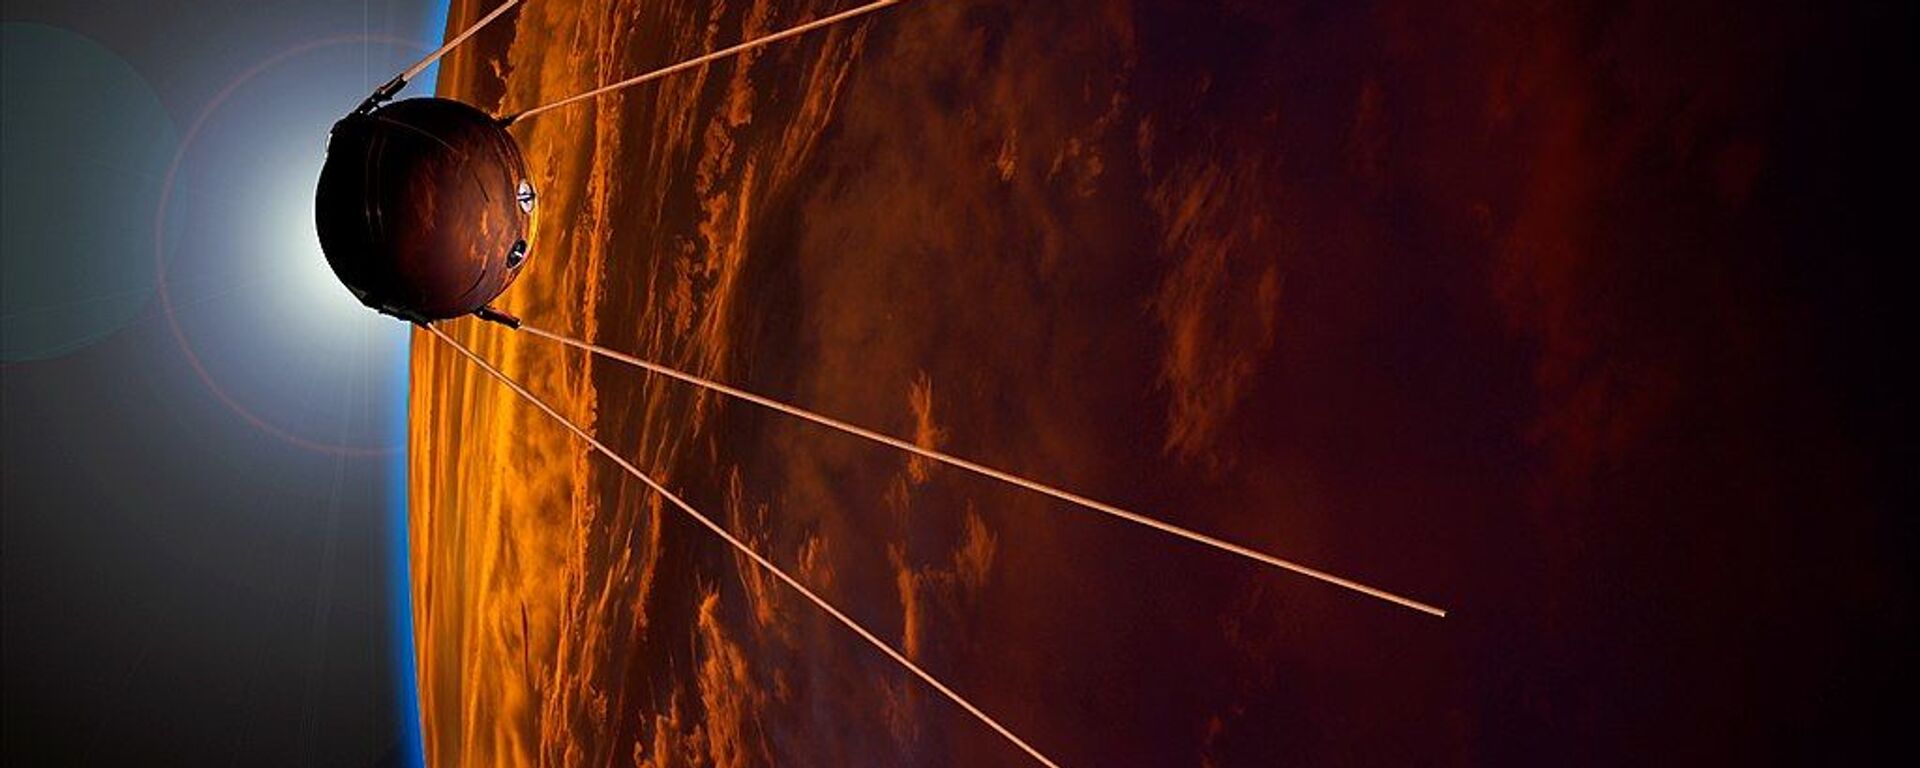 İlk yapay uydunun fırlatılışının 60. yıldönümü - Sputnik Türkiye, 1920, 28.10.2021